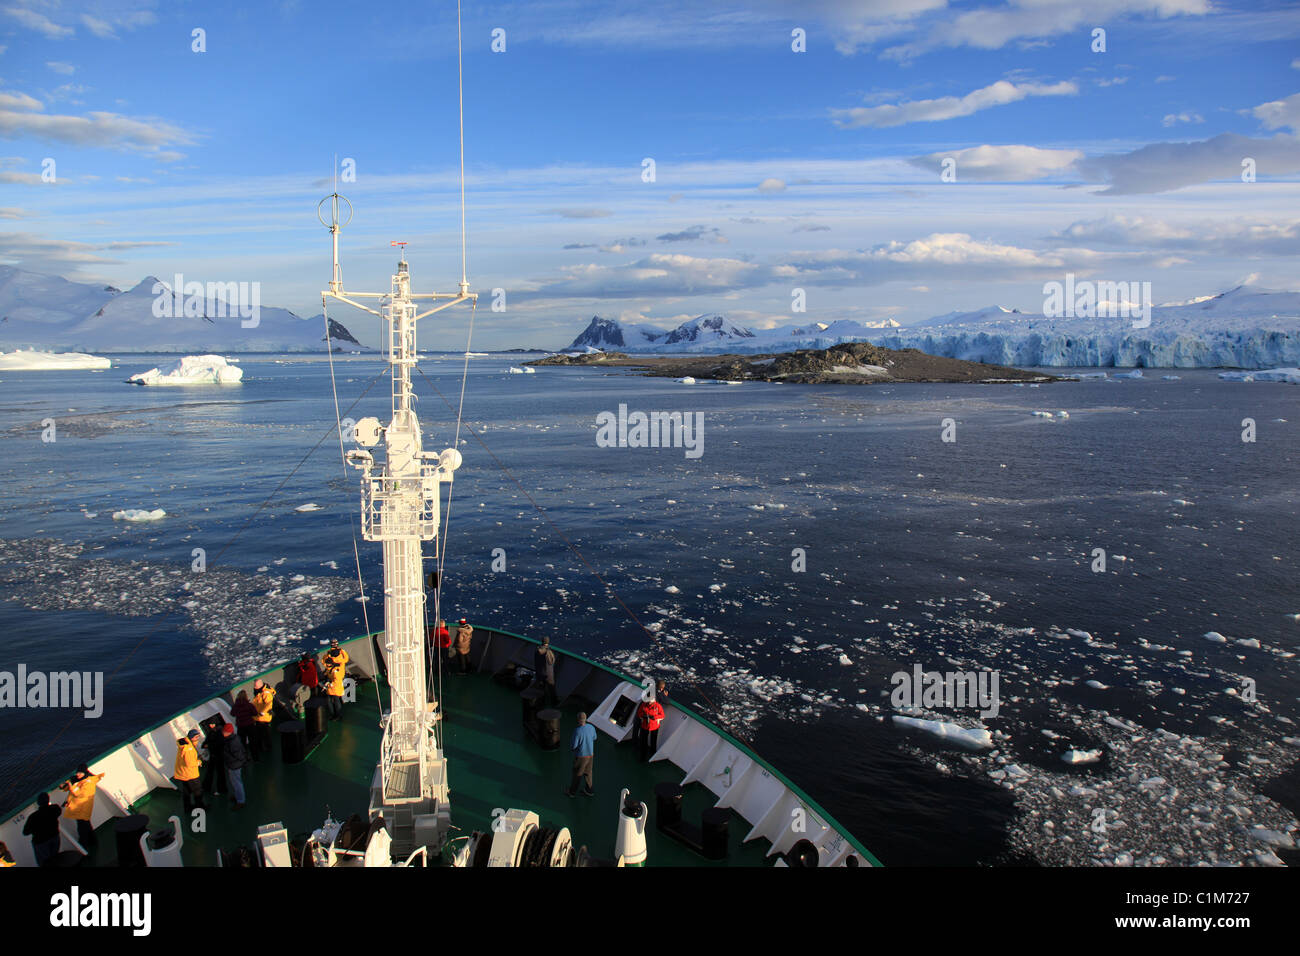 L'exploration en Antarctique Croisière navire qui approche de l'île rocky [Stonington] dans [Baie Marguerite], [Ouest] La Terre de Graham, en Antarctique Banque D'Images